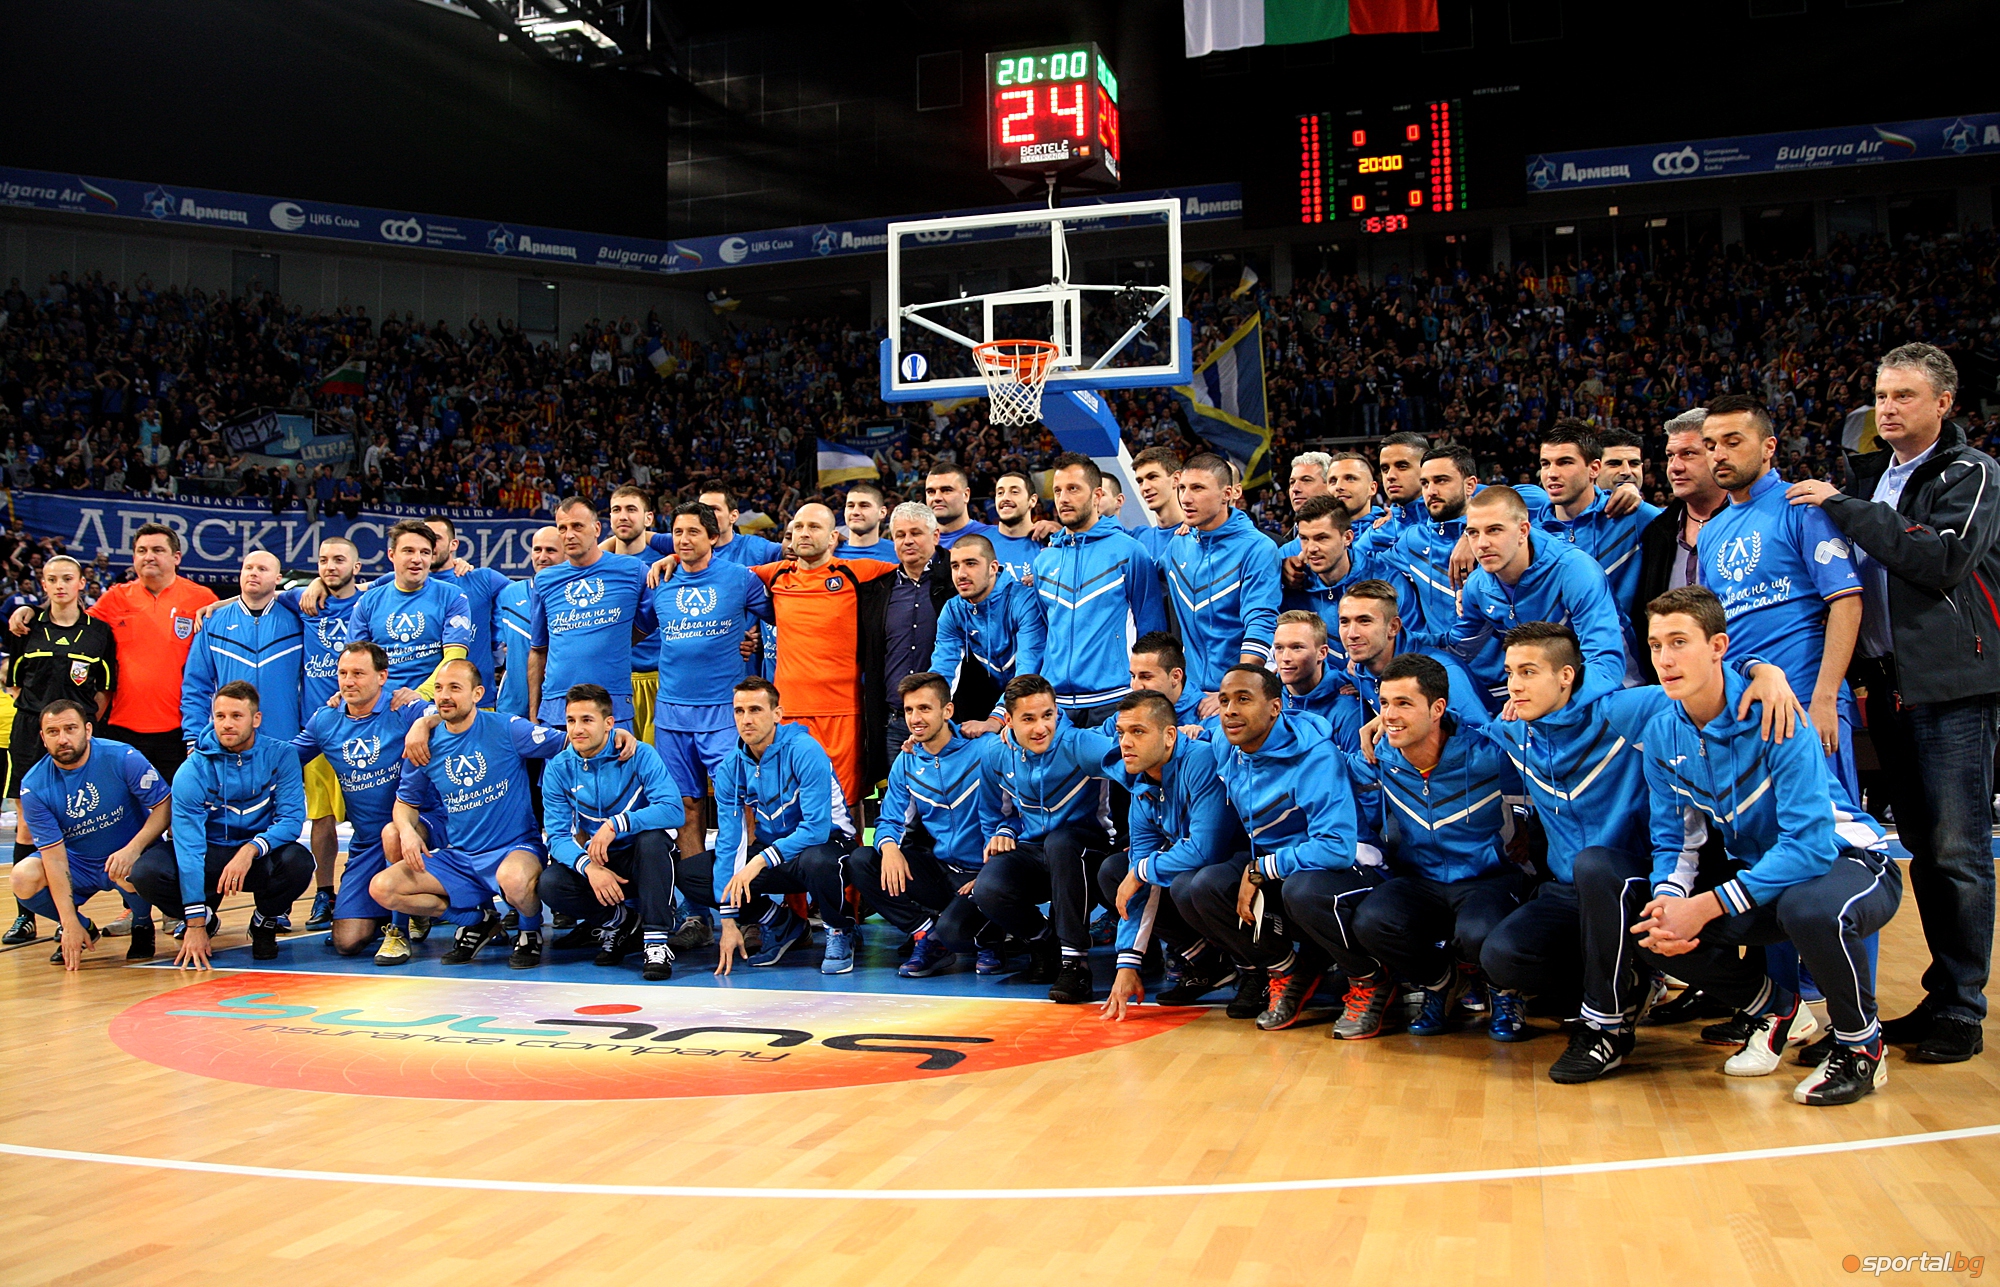 Футболисти и баскетболисти с историческо шоу в подкрепа на БК Левски - част II